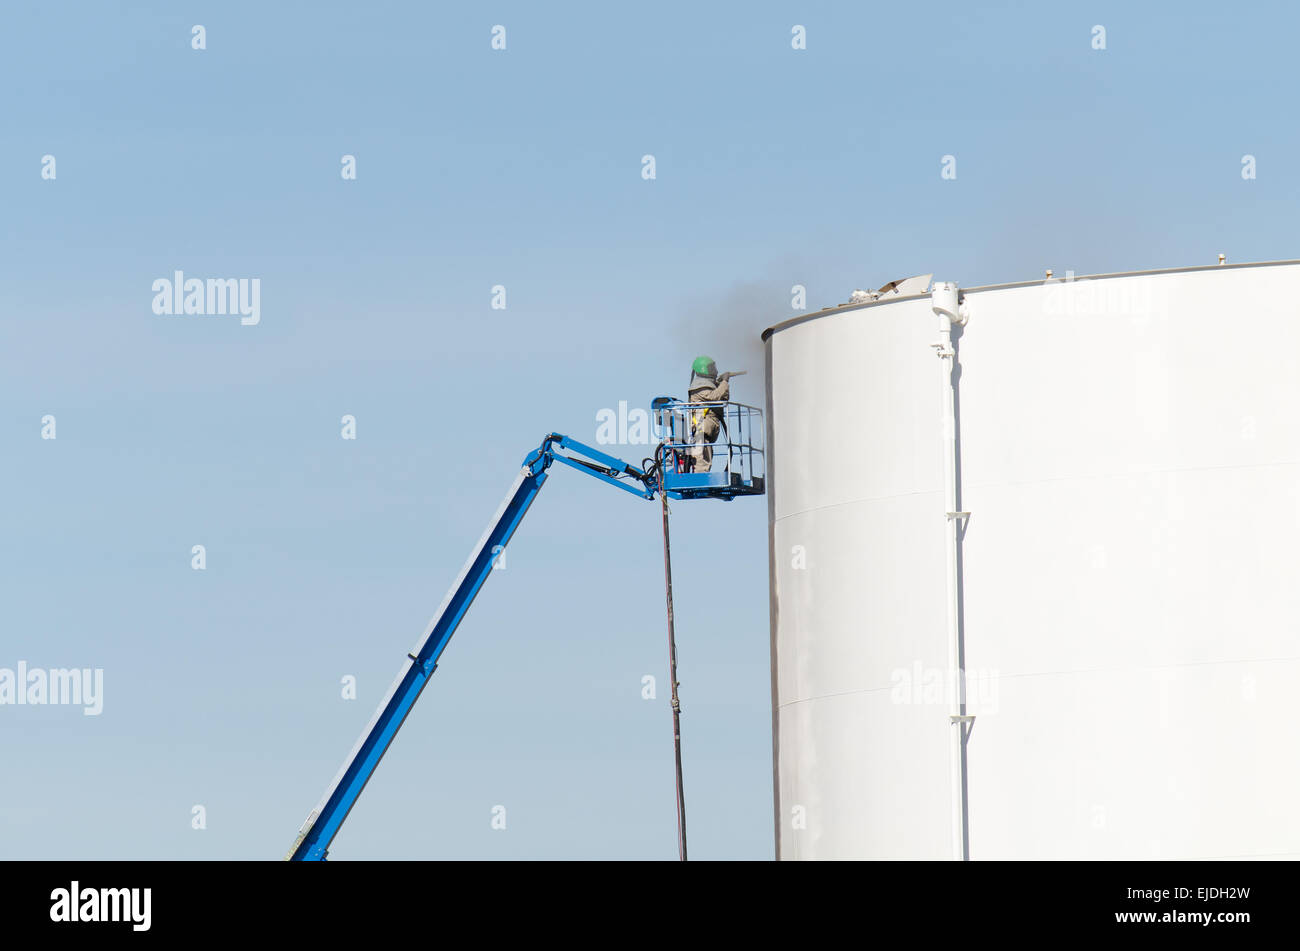 Worker sandblasting petroleum storage tank prior to painting Stock Photo